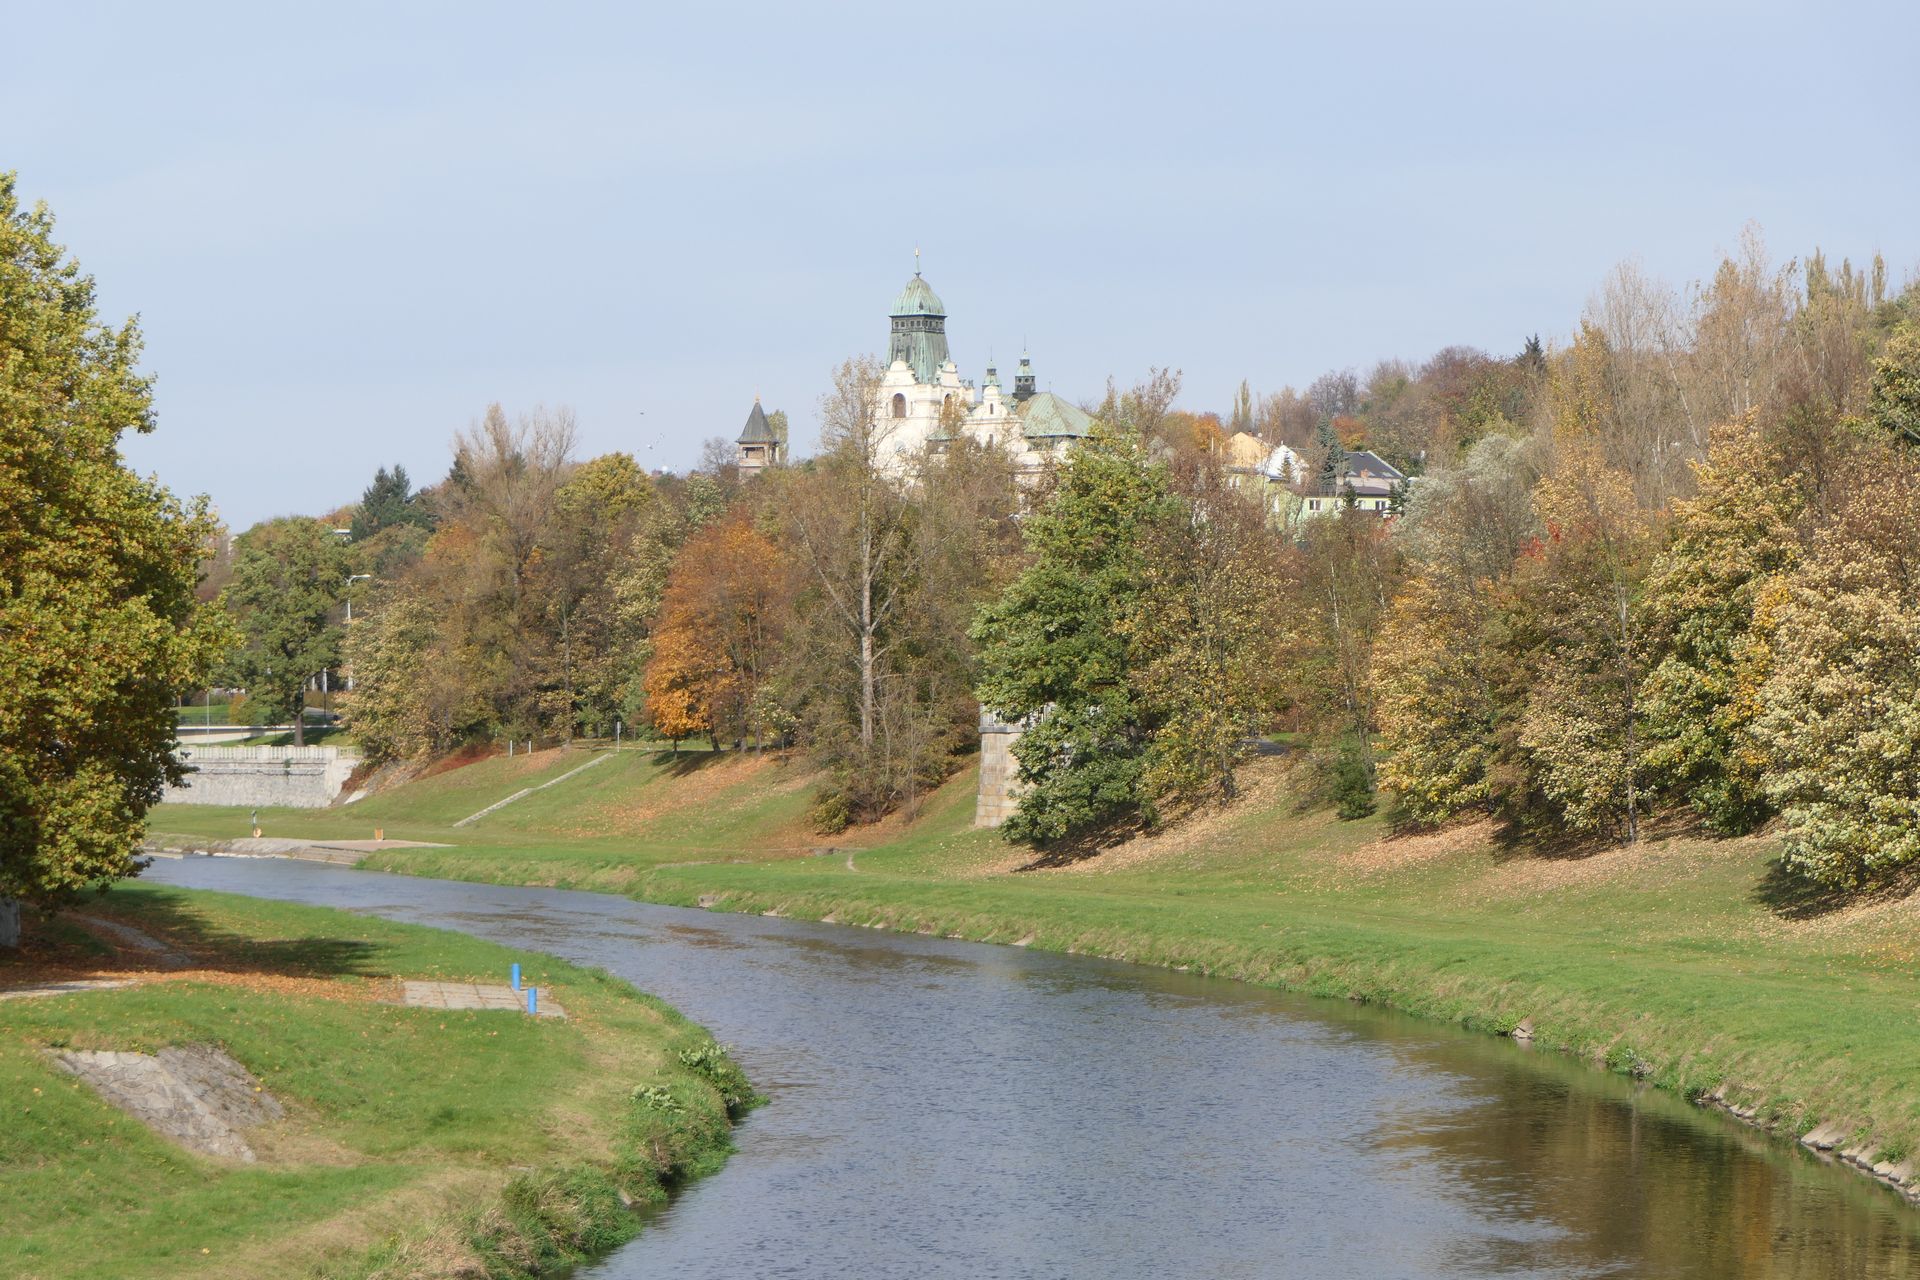 Wzgórze zamkowe we Frydku-Mistku szczególnie okazale prezentuje się z brzegów rzeki.